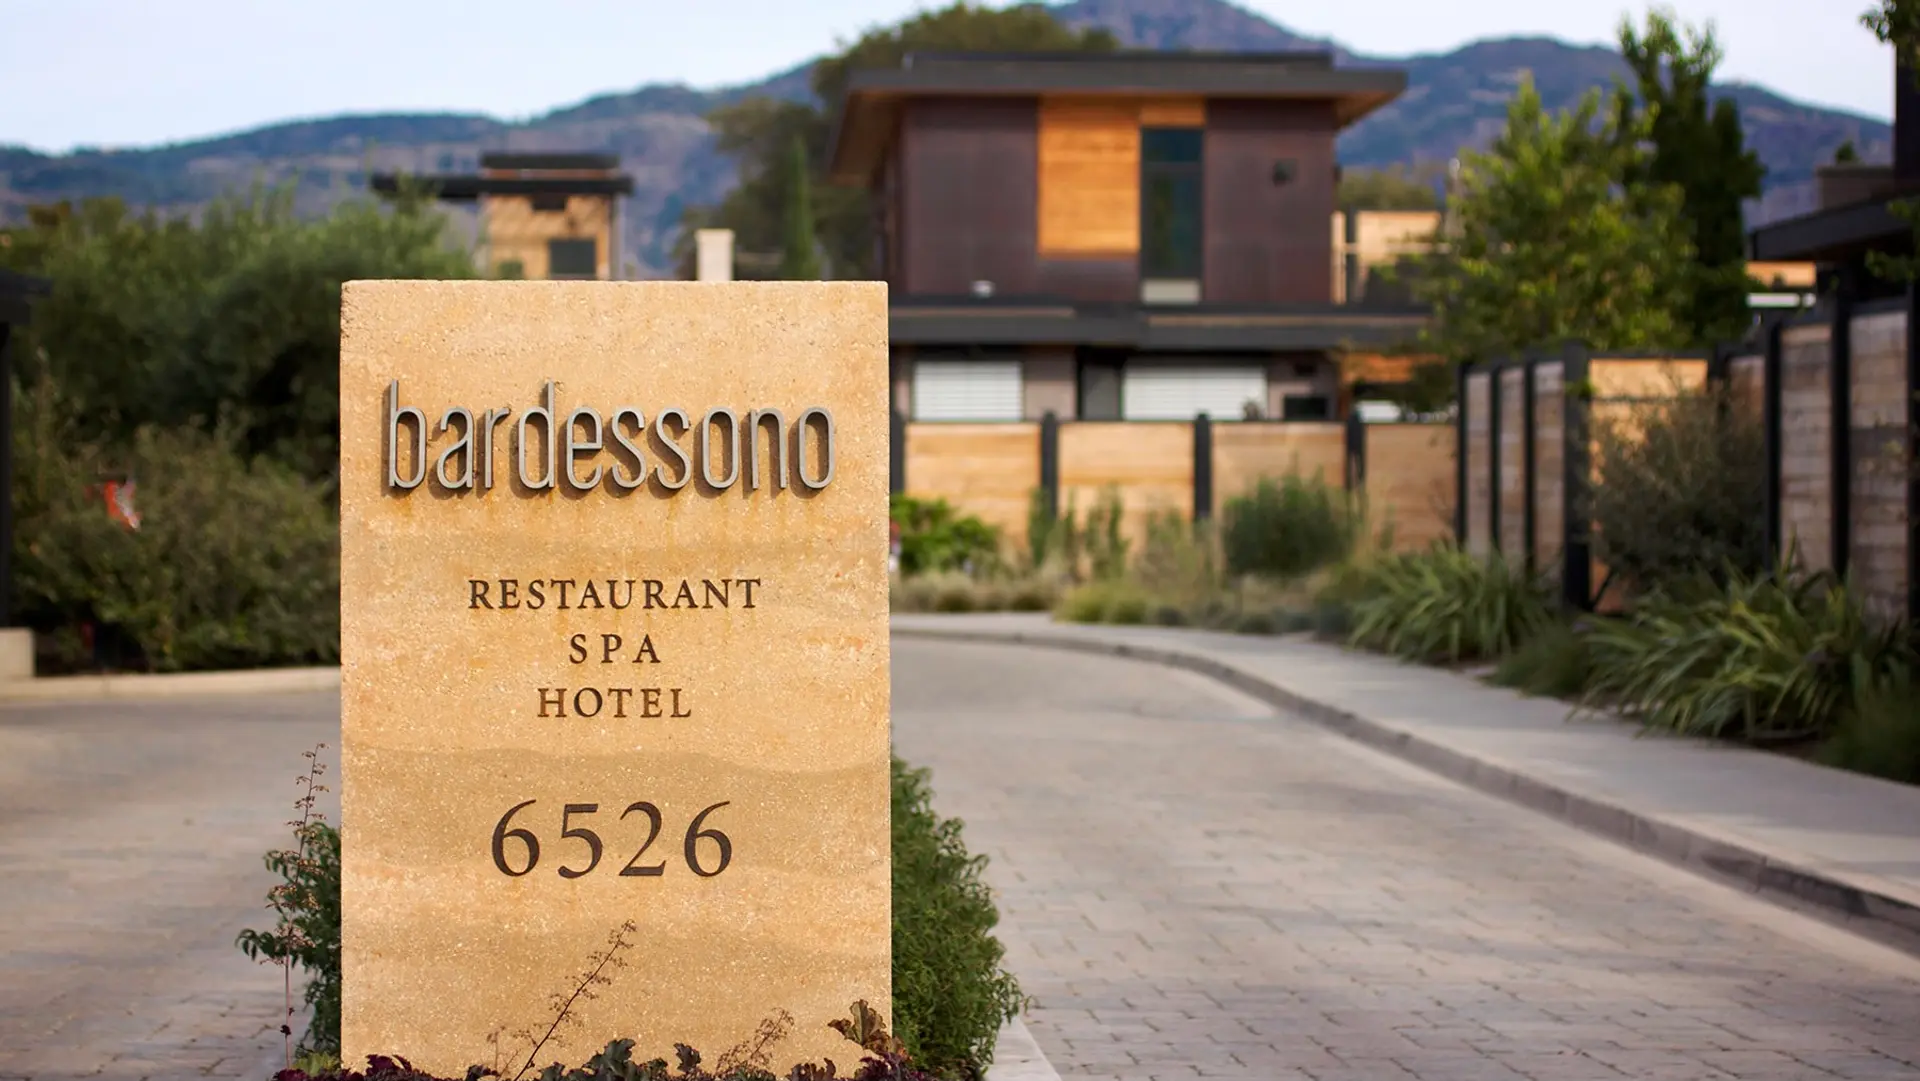 Bardessono Hotel and Spa